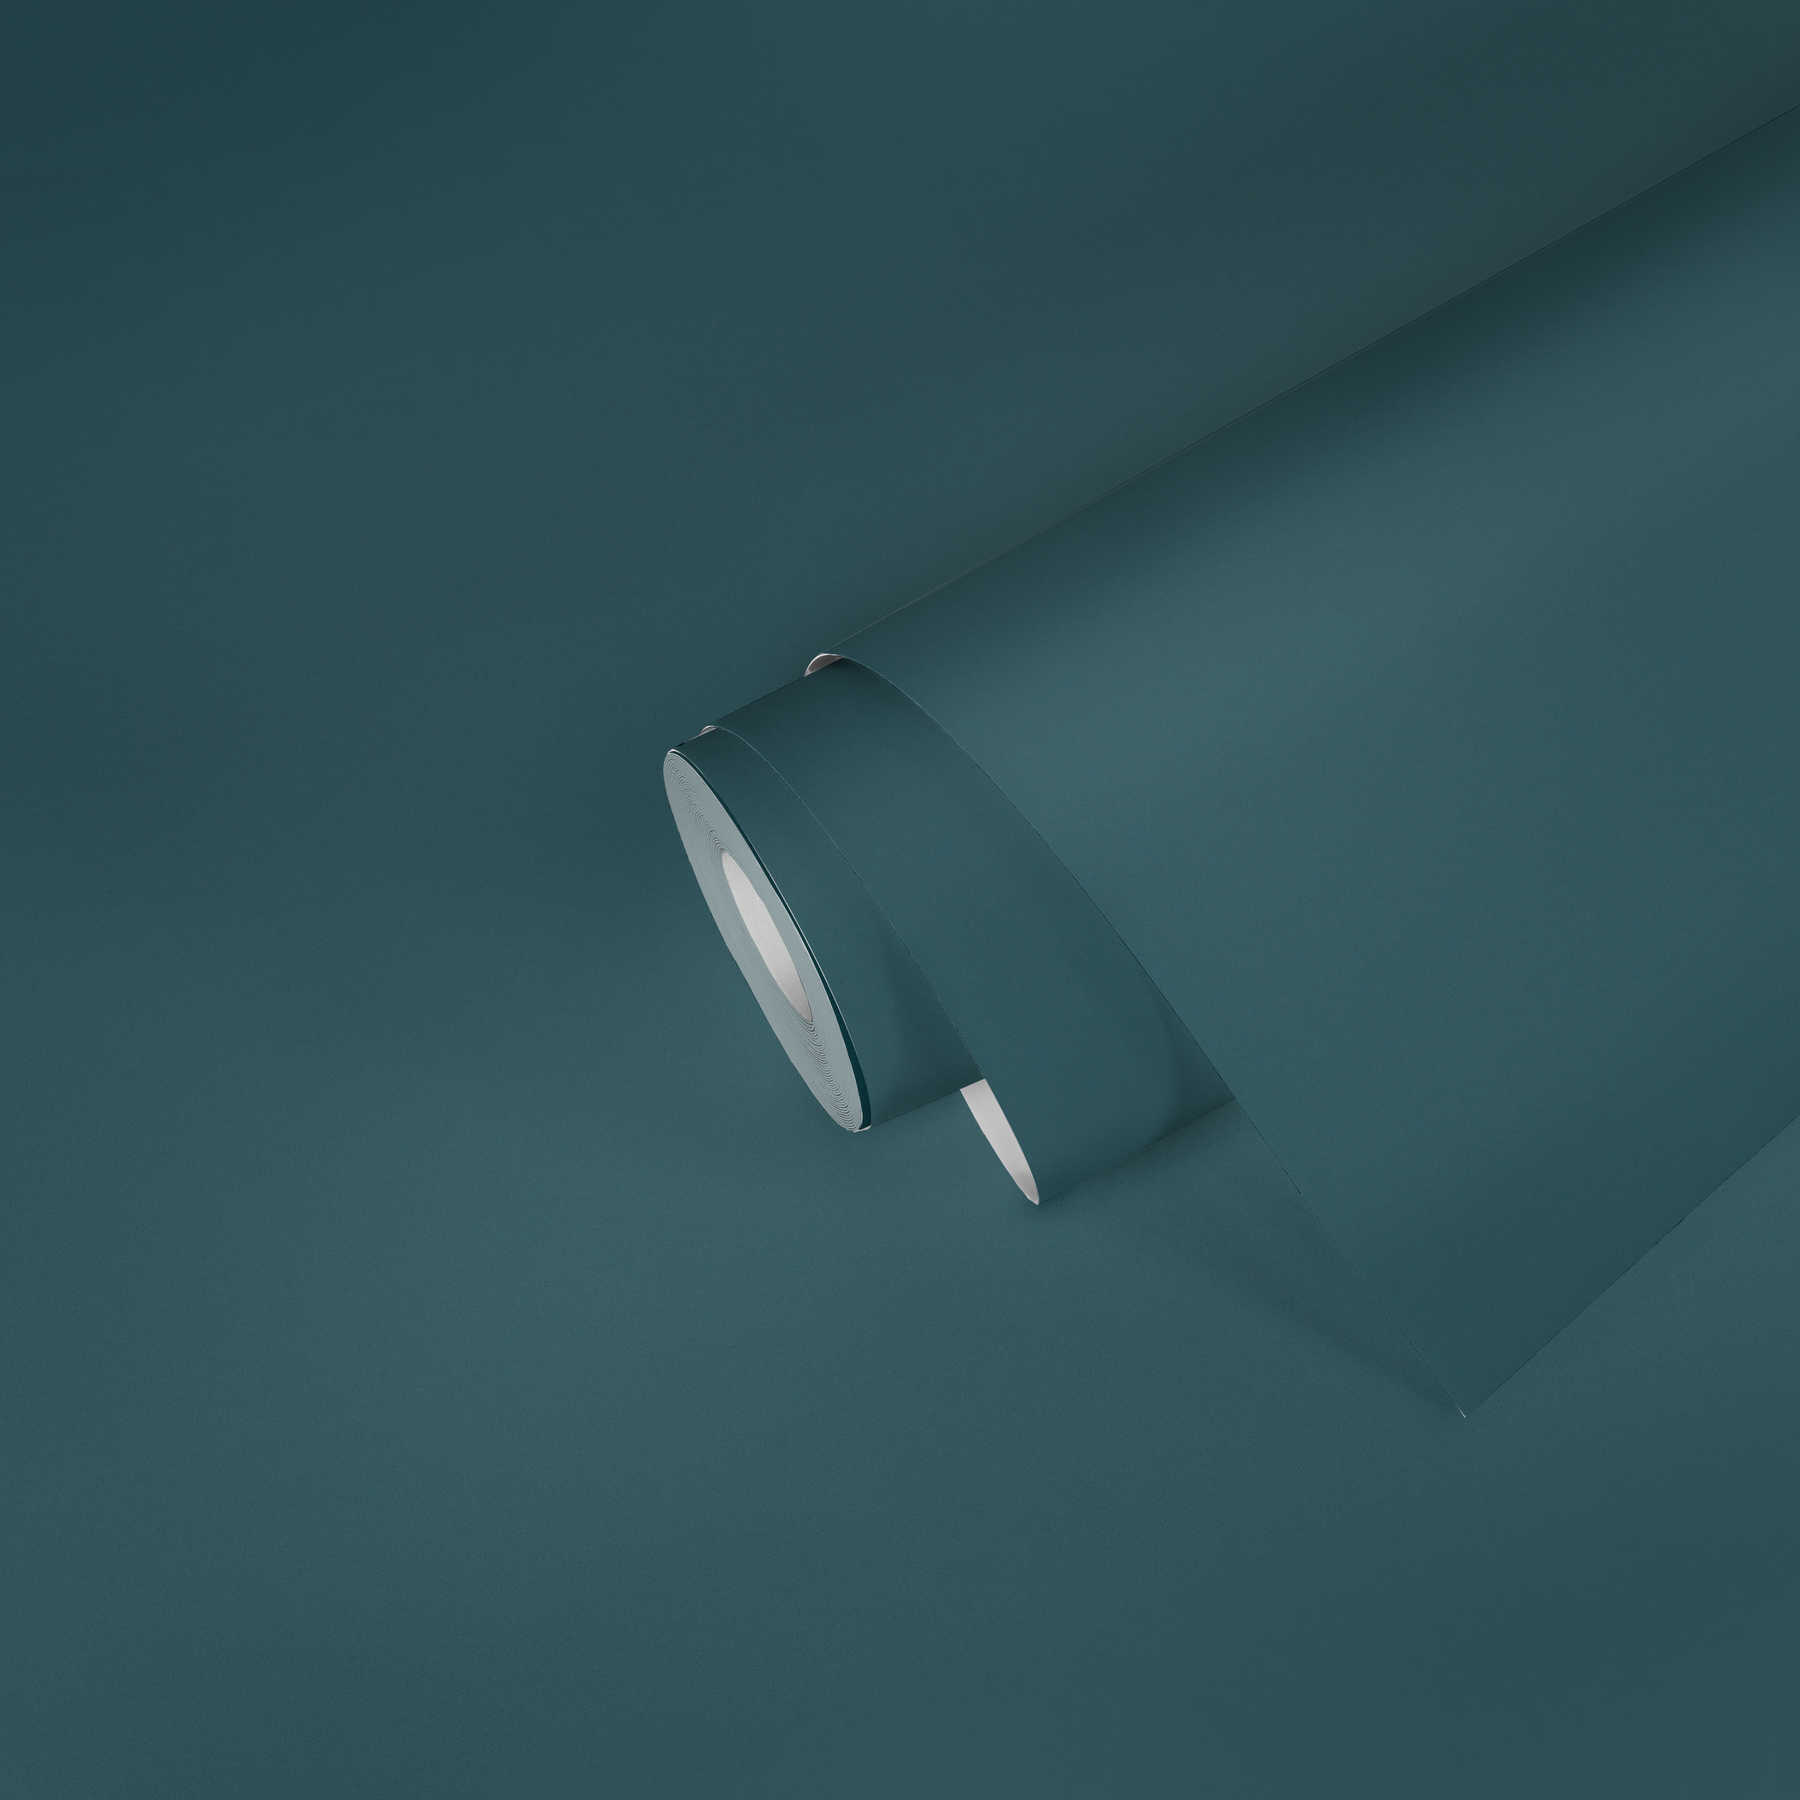             Matt wallpaper plain with surface texture - petrol
        